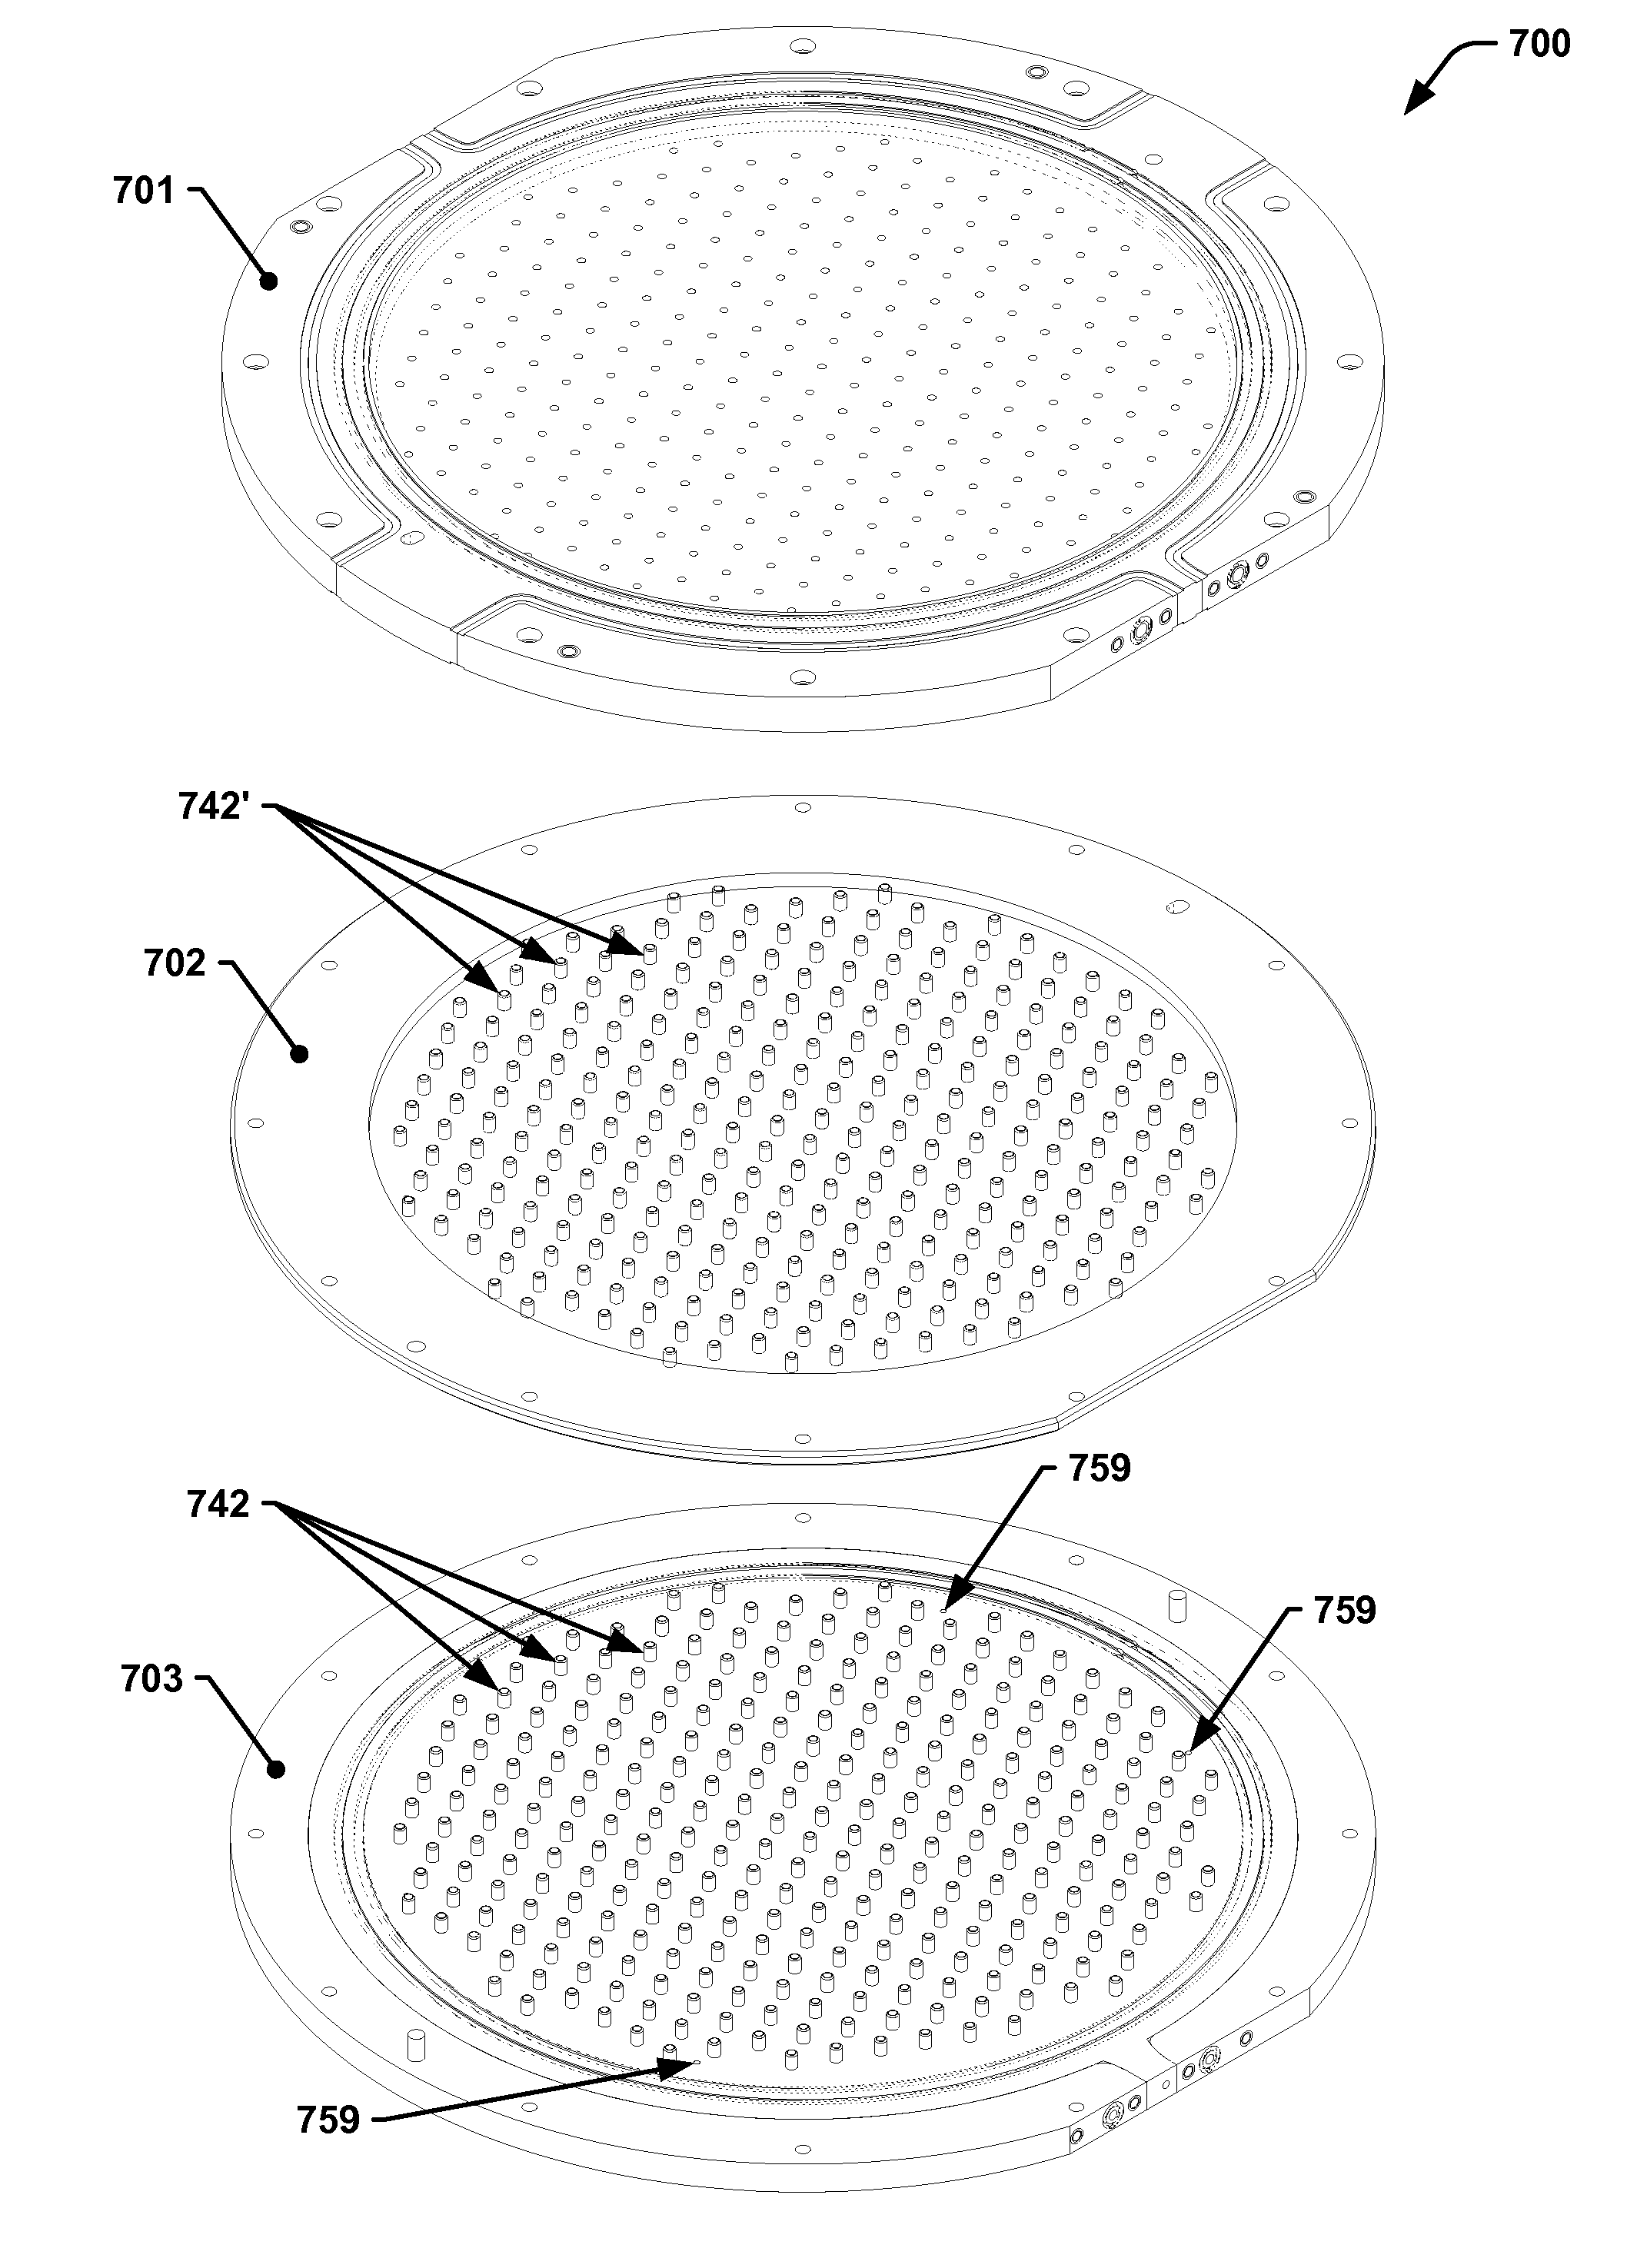 Multi-plenum showerhead with temperature control